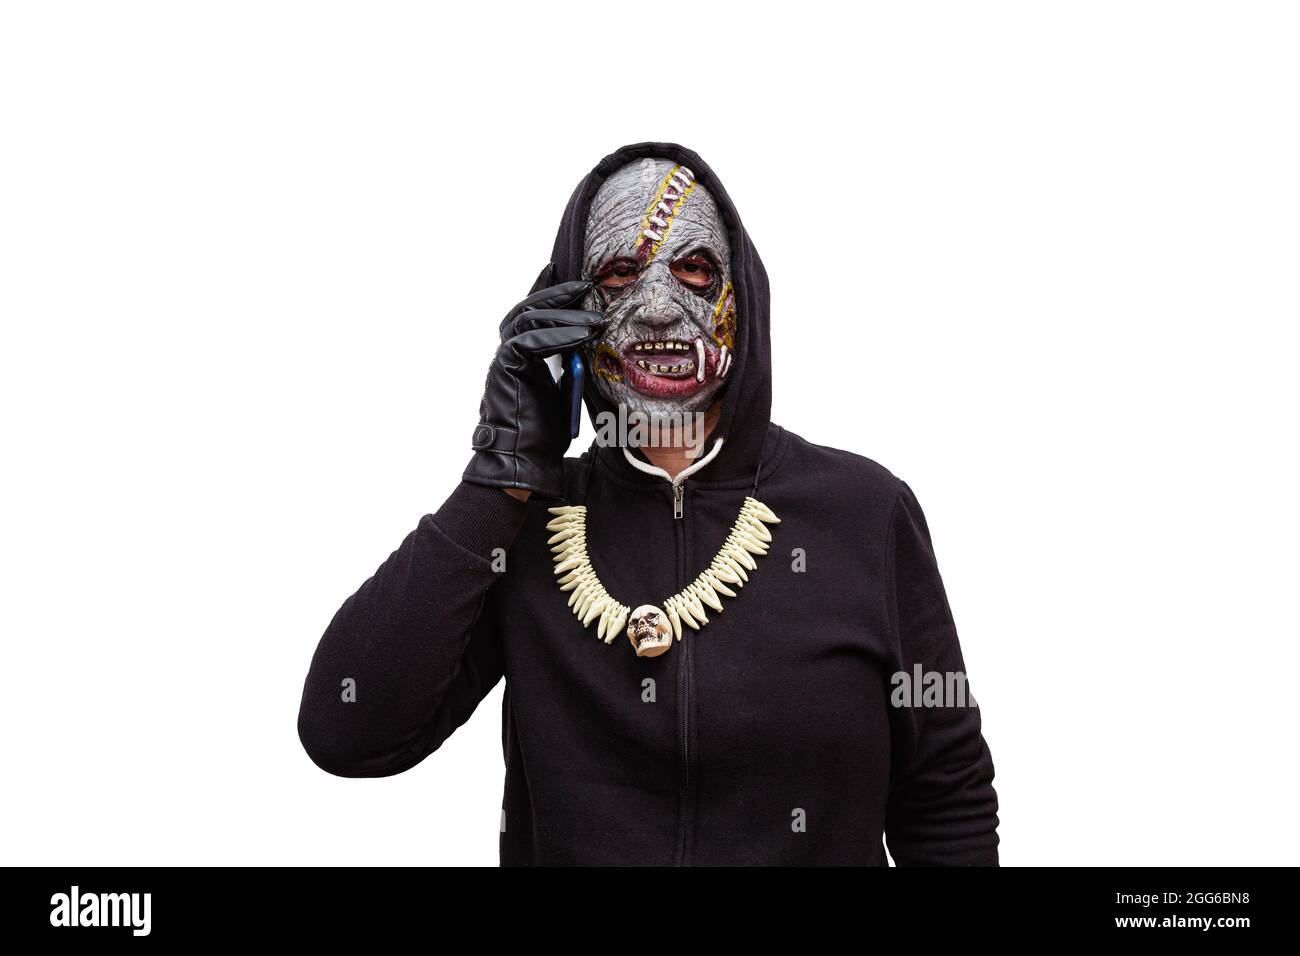 Ein Mann, der in einer Zombie-Maske verkleidet ist und in einem schwarzen Kapuzen-Sweatshirt gekleidet ist, telefoniert mit seinem Smartphone. Stockfoto